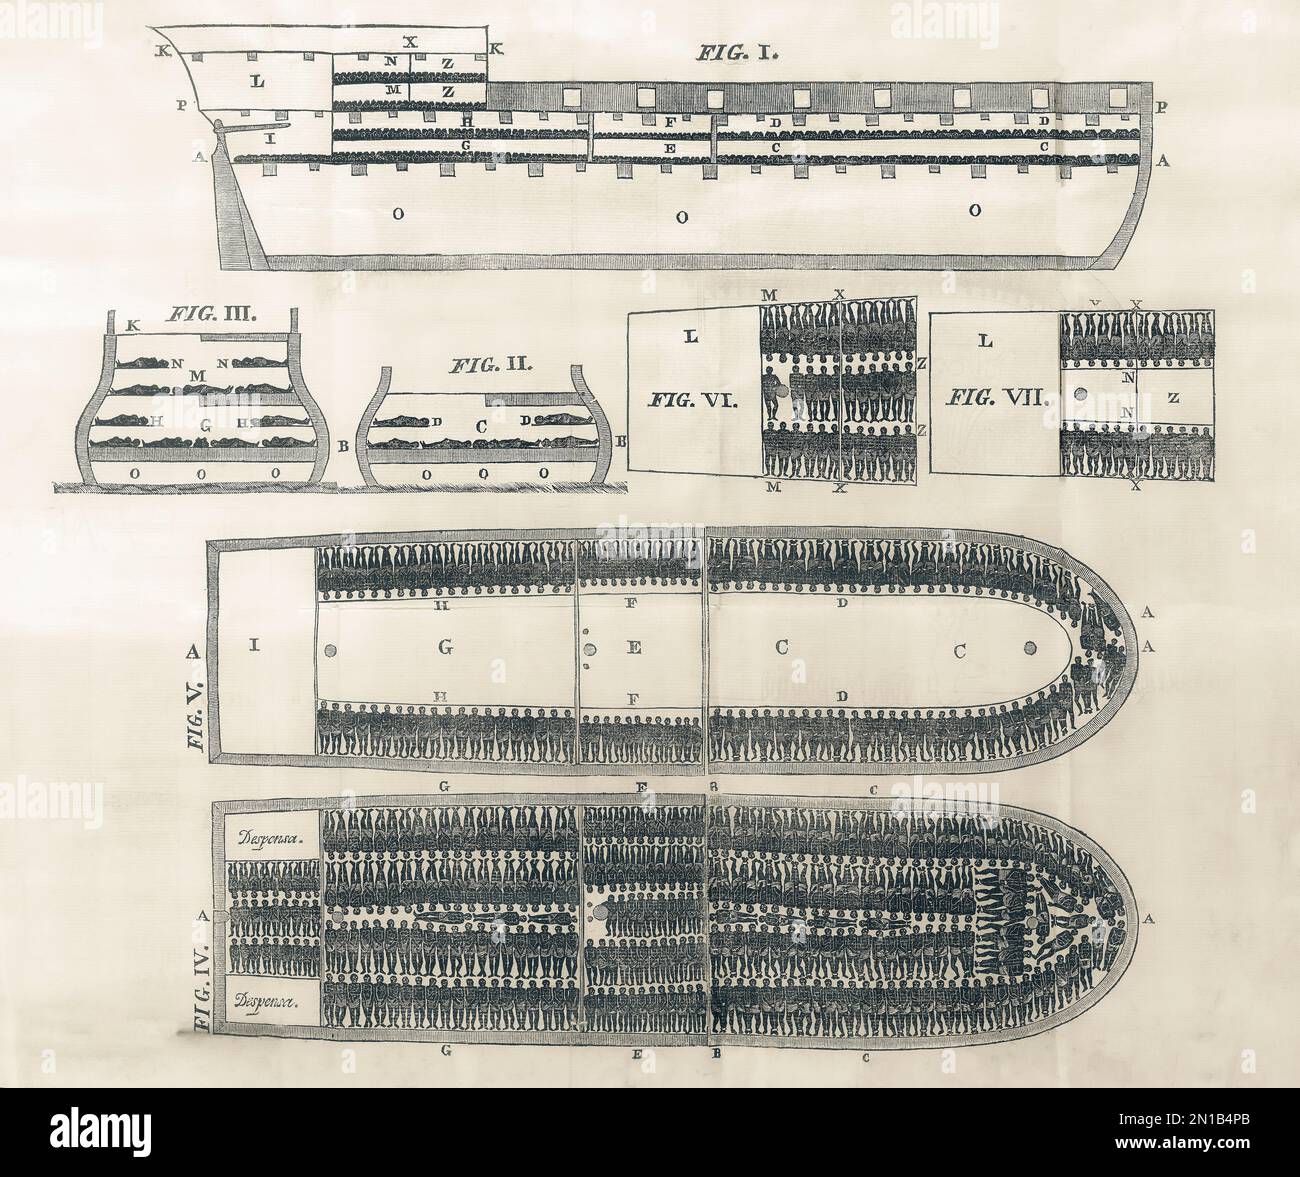 Plan der Decks eines Sklavenschiffs, der die unmenschlichen Bedingungen zeigt, unter denen Sklaven über den Atlantik transportiert wurden. Nach einer Illustration des 19. Jahrhunderts. Stockfoto